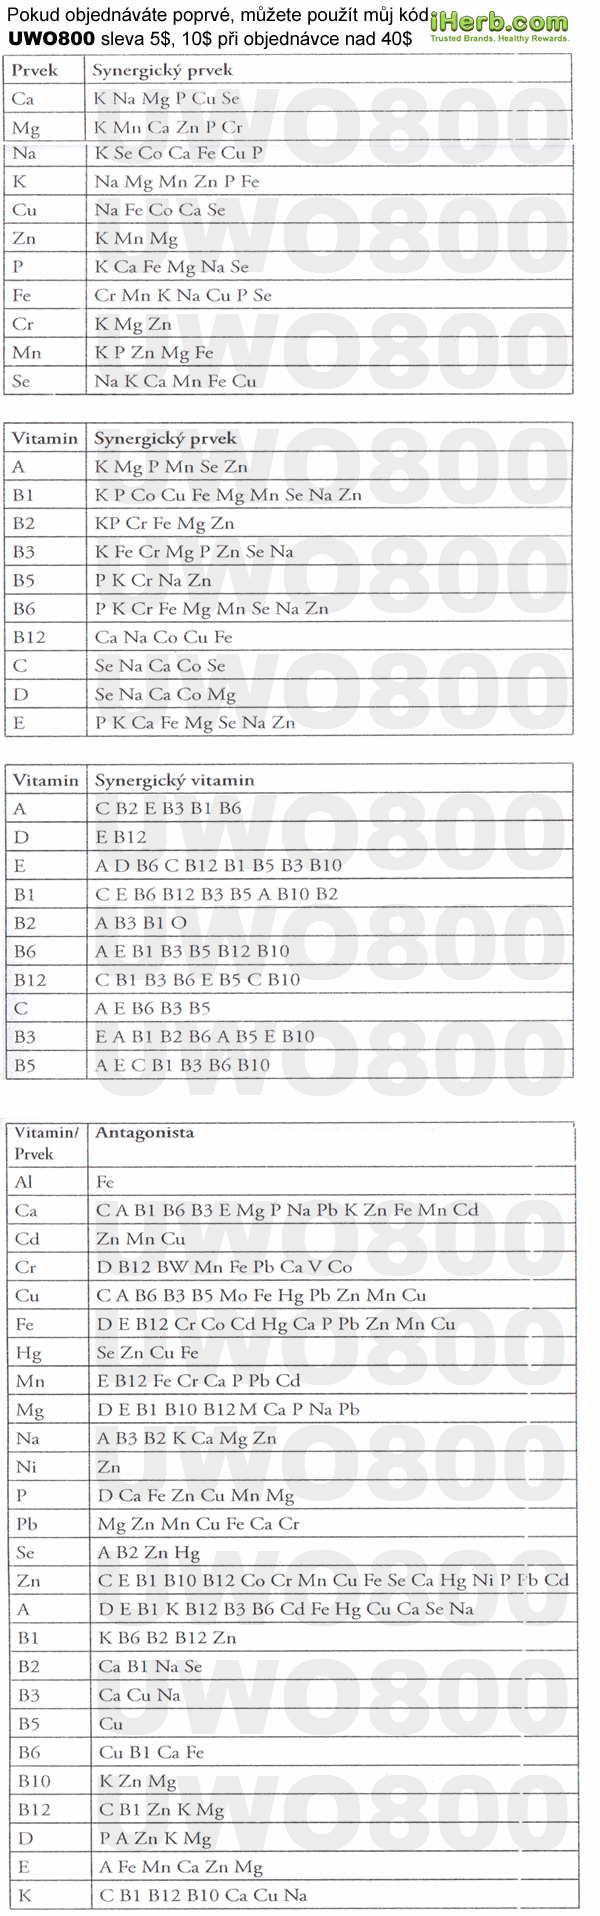 kombinacie-mineralov-a-vitaminov-w600.gif